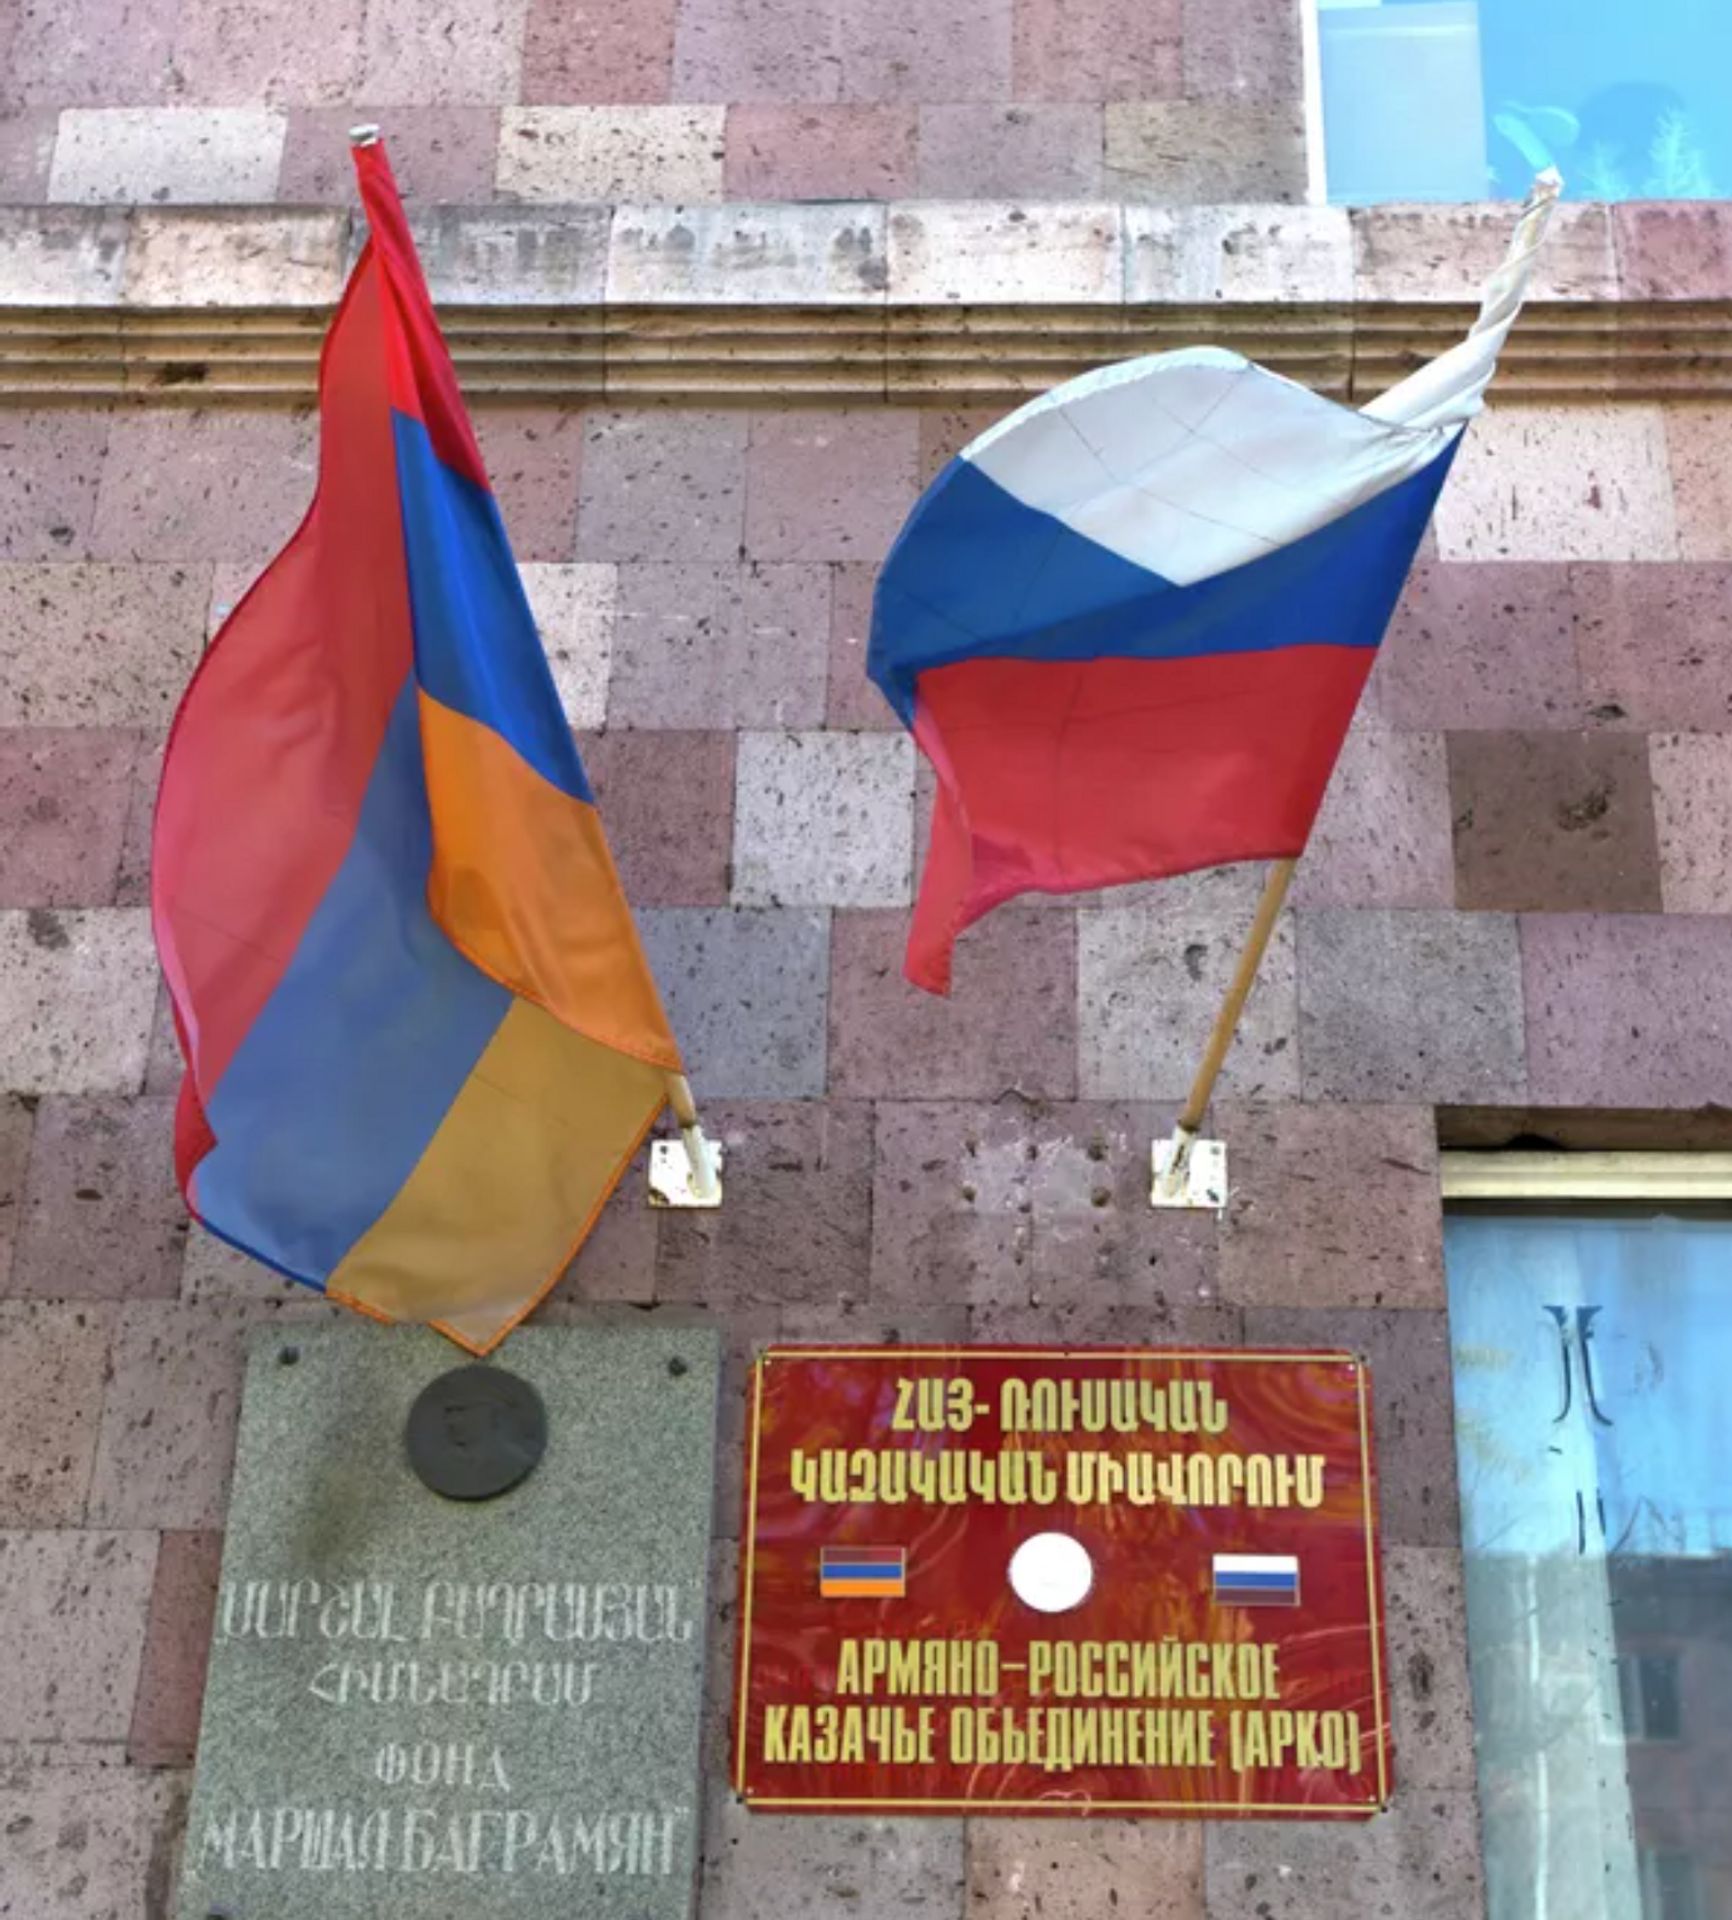 Армяно-российское казачье объединение в Ереване